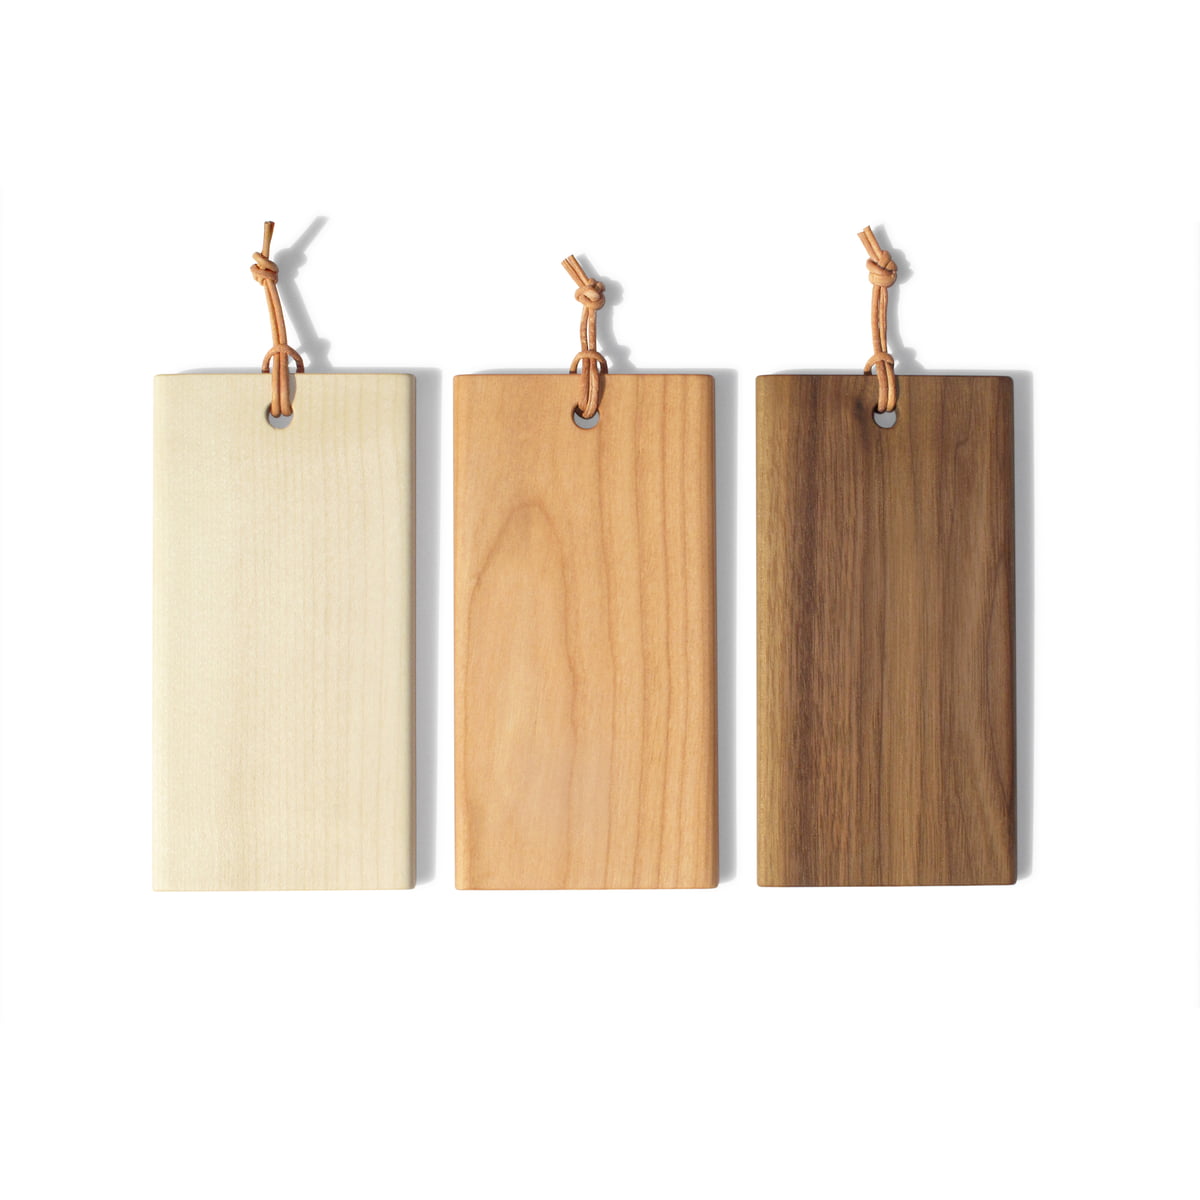 Eva Solo - Nordic Kitchen Wooden Cutting Board, 44 x 22 cm